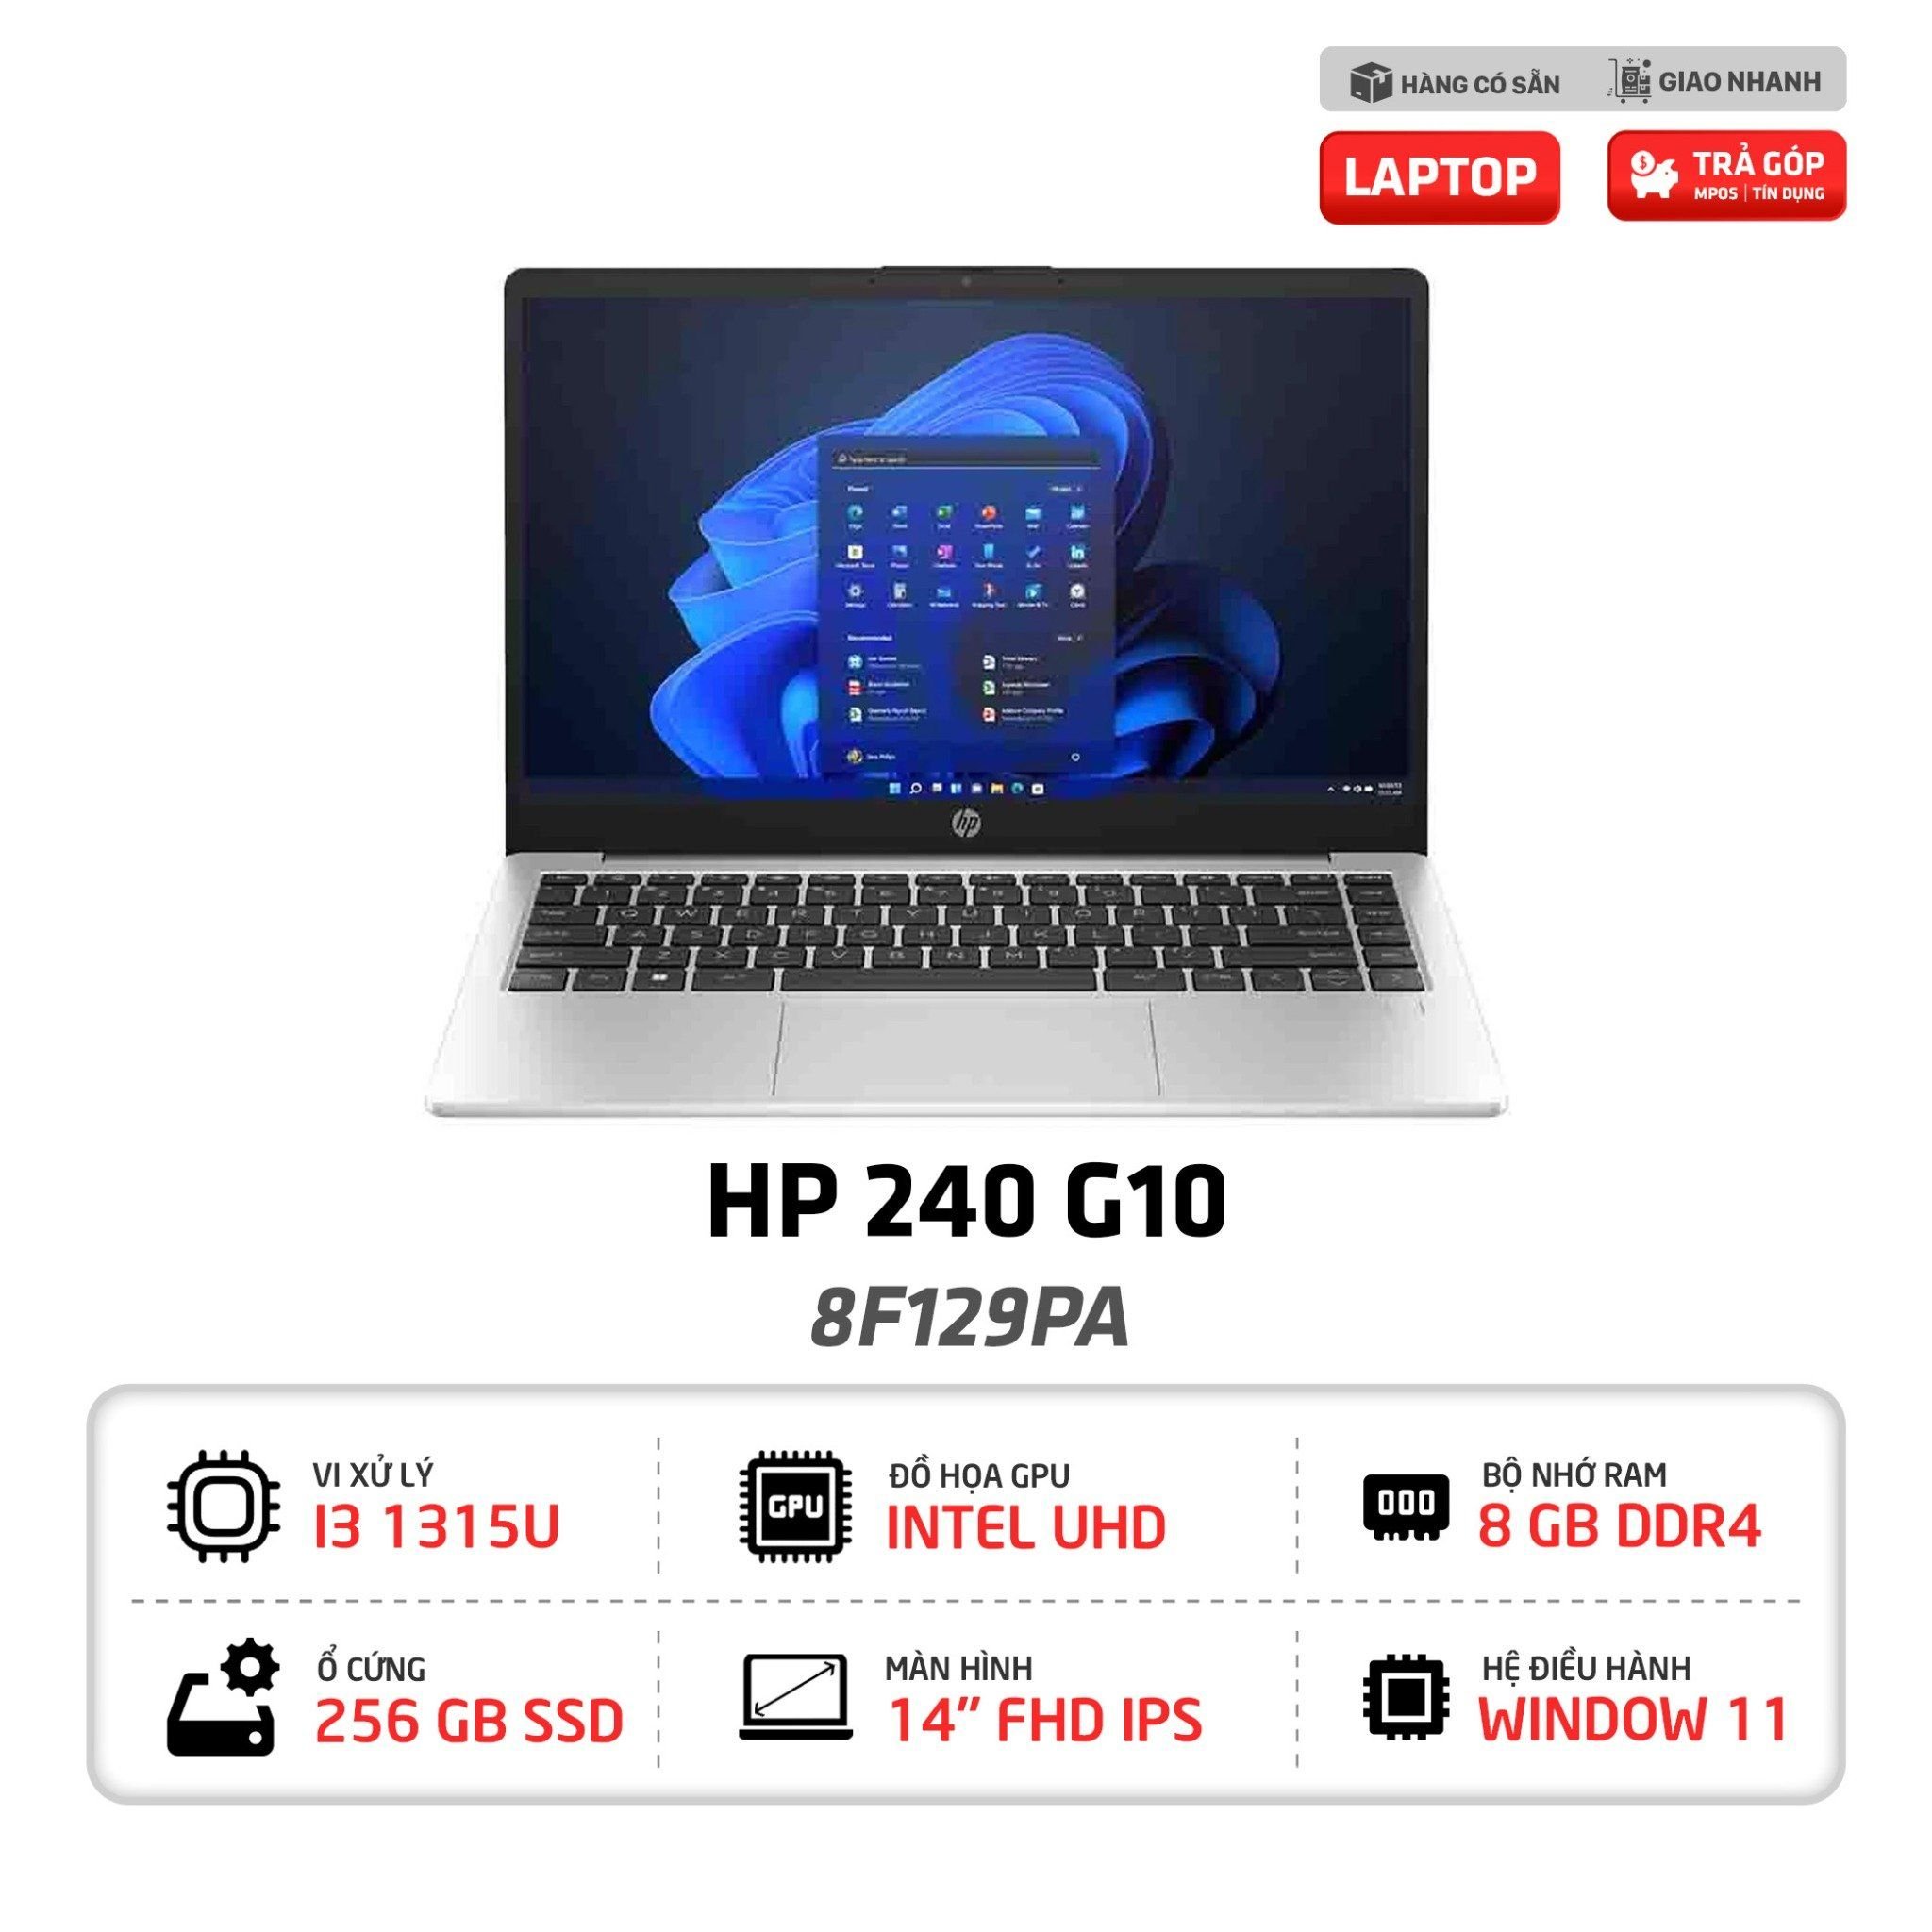 Laptop HP 240 G10 - 8F129PA